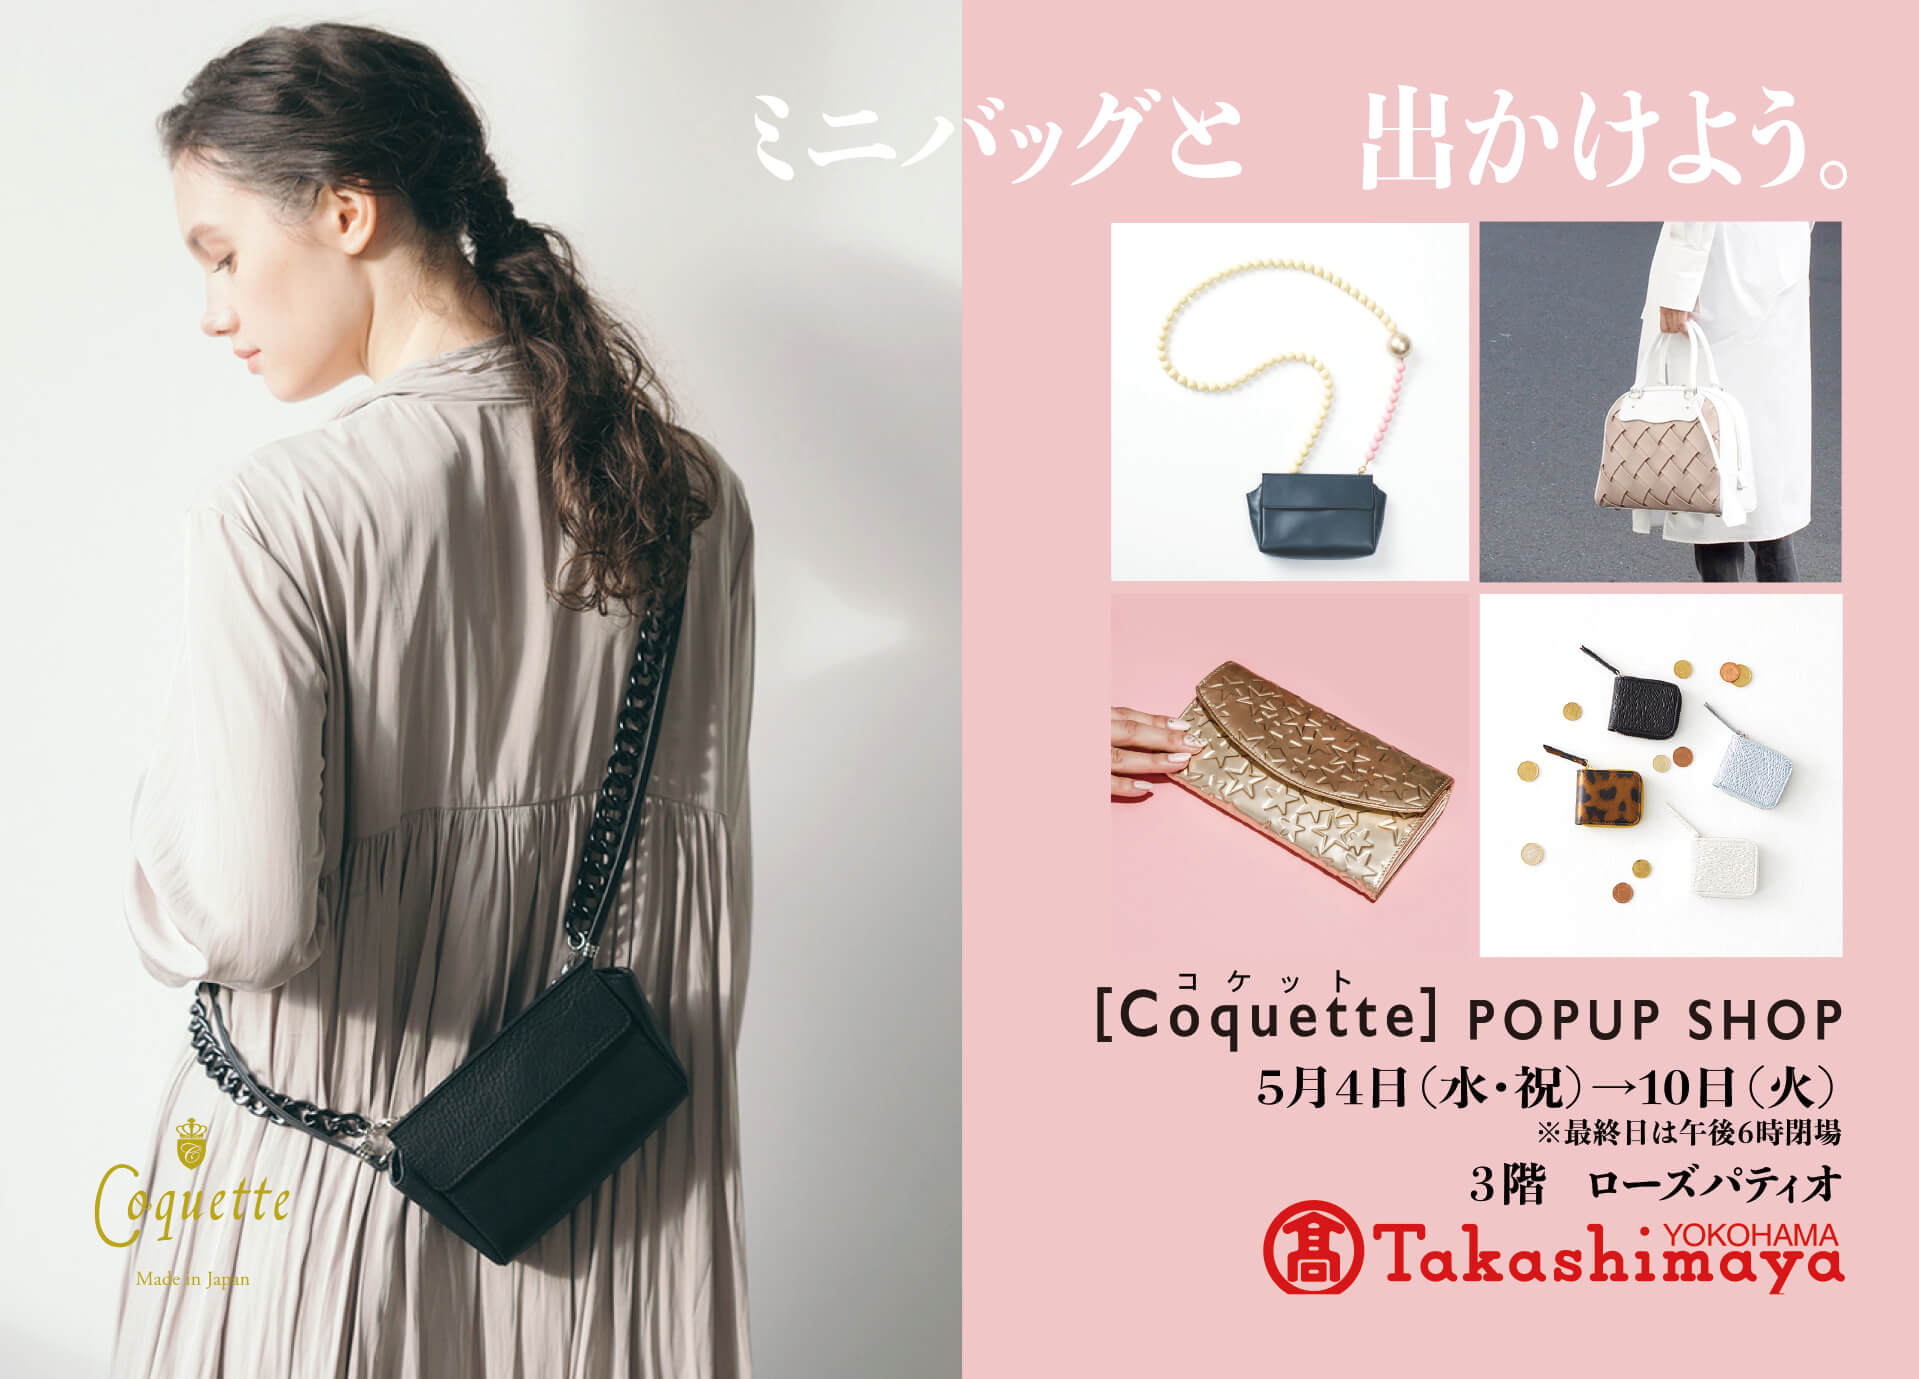 Yokohama Takashimaya “Coquette” POPUP Japanese leather mini bag is abundant